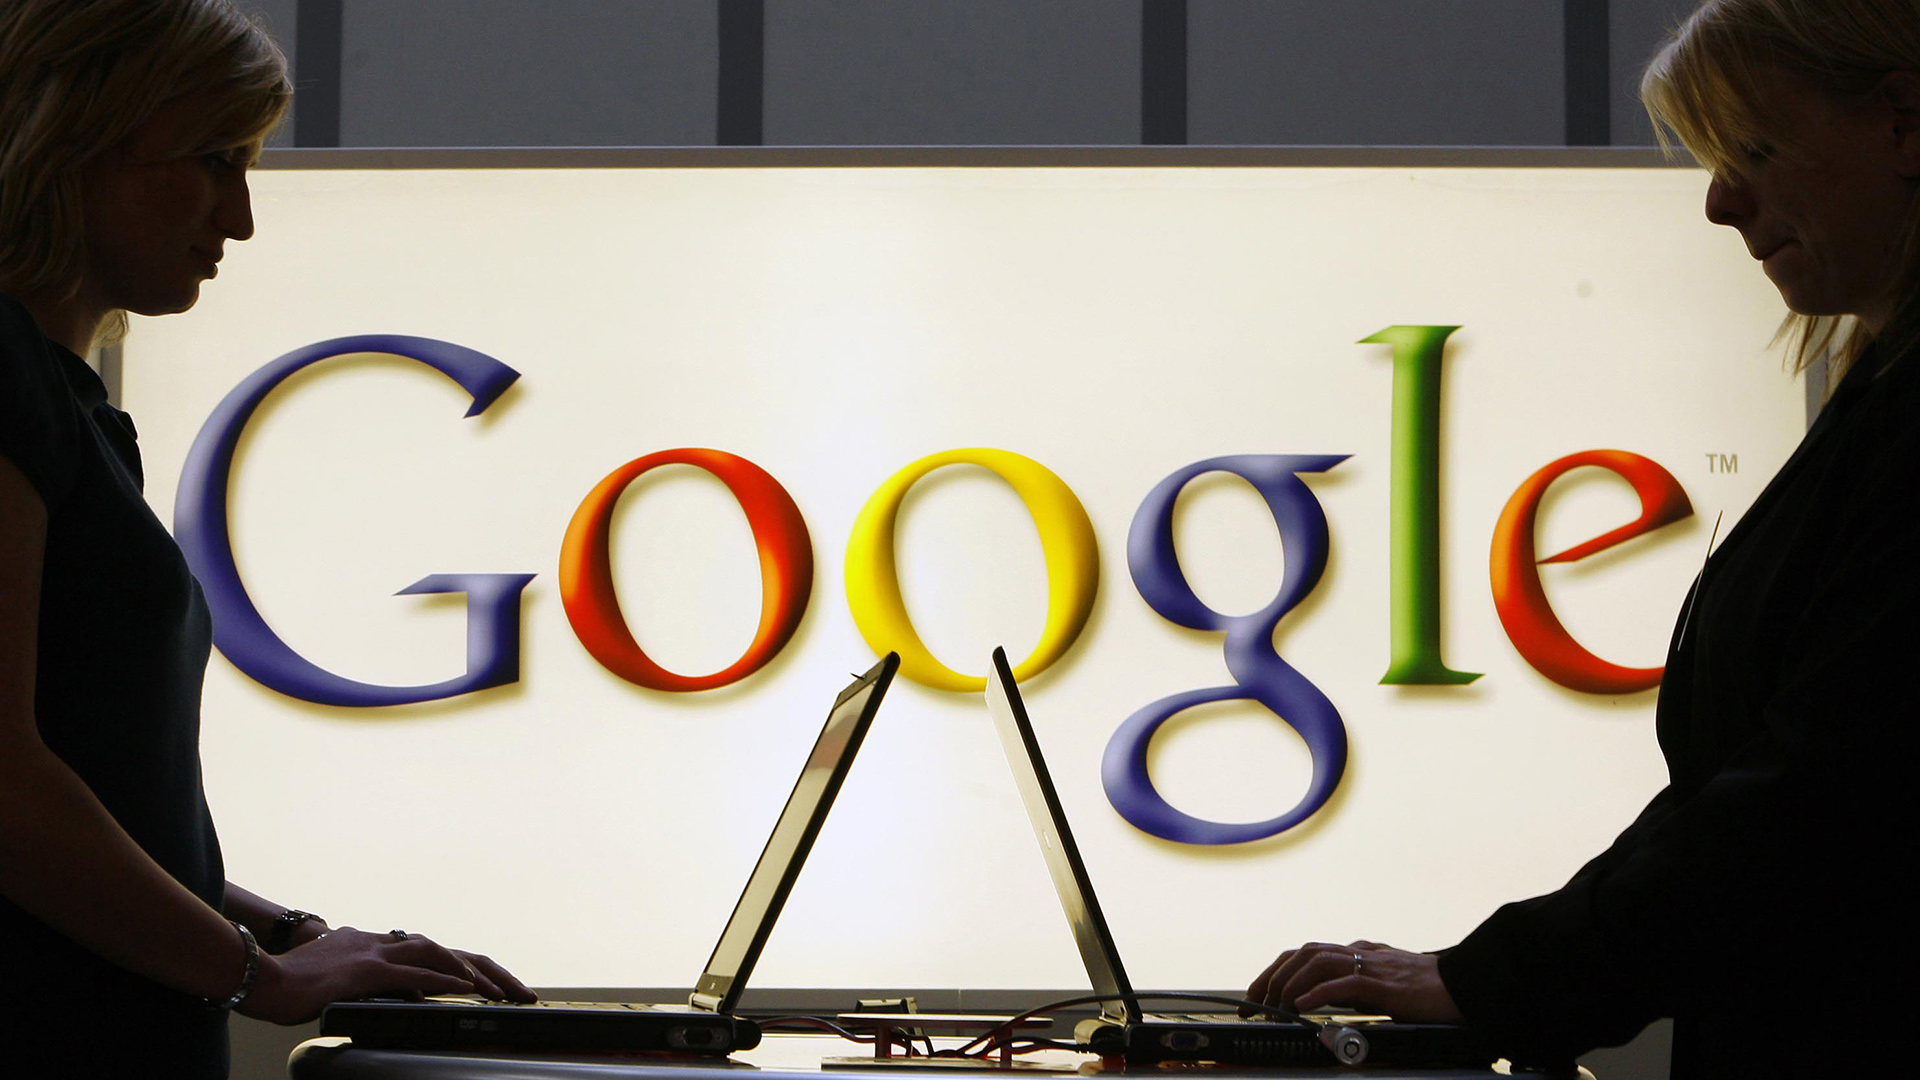 Google toma medidas para evitar asociar la publicidad a contenido inapropiado